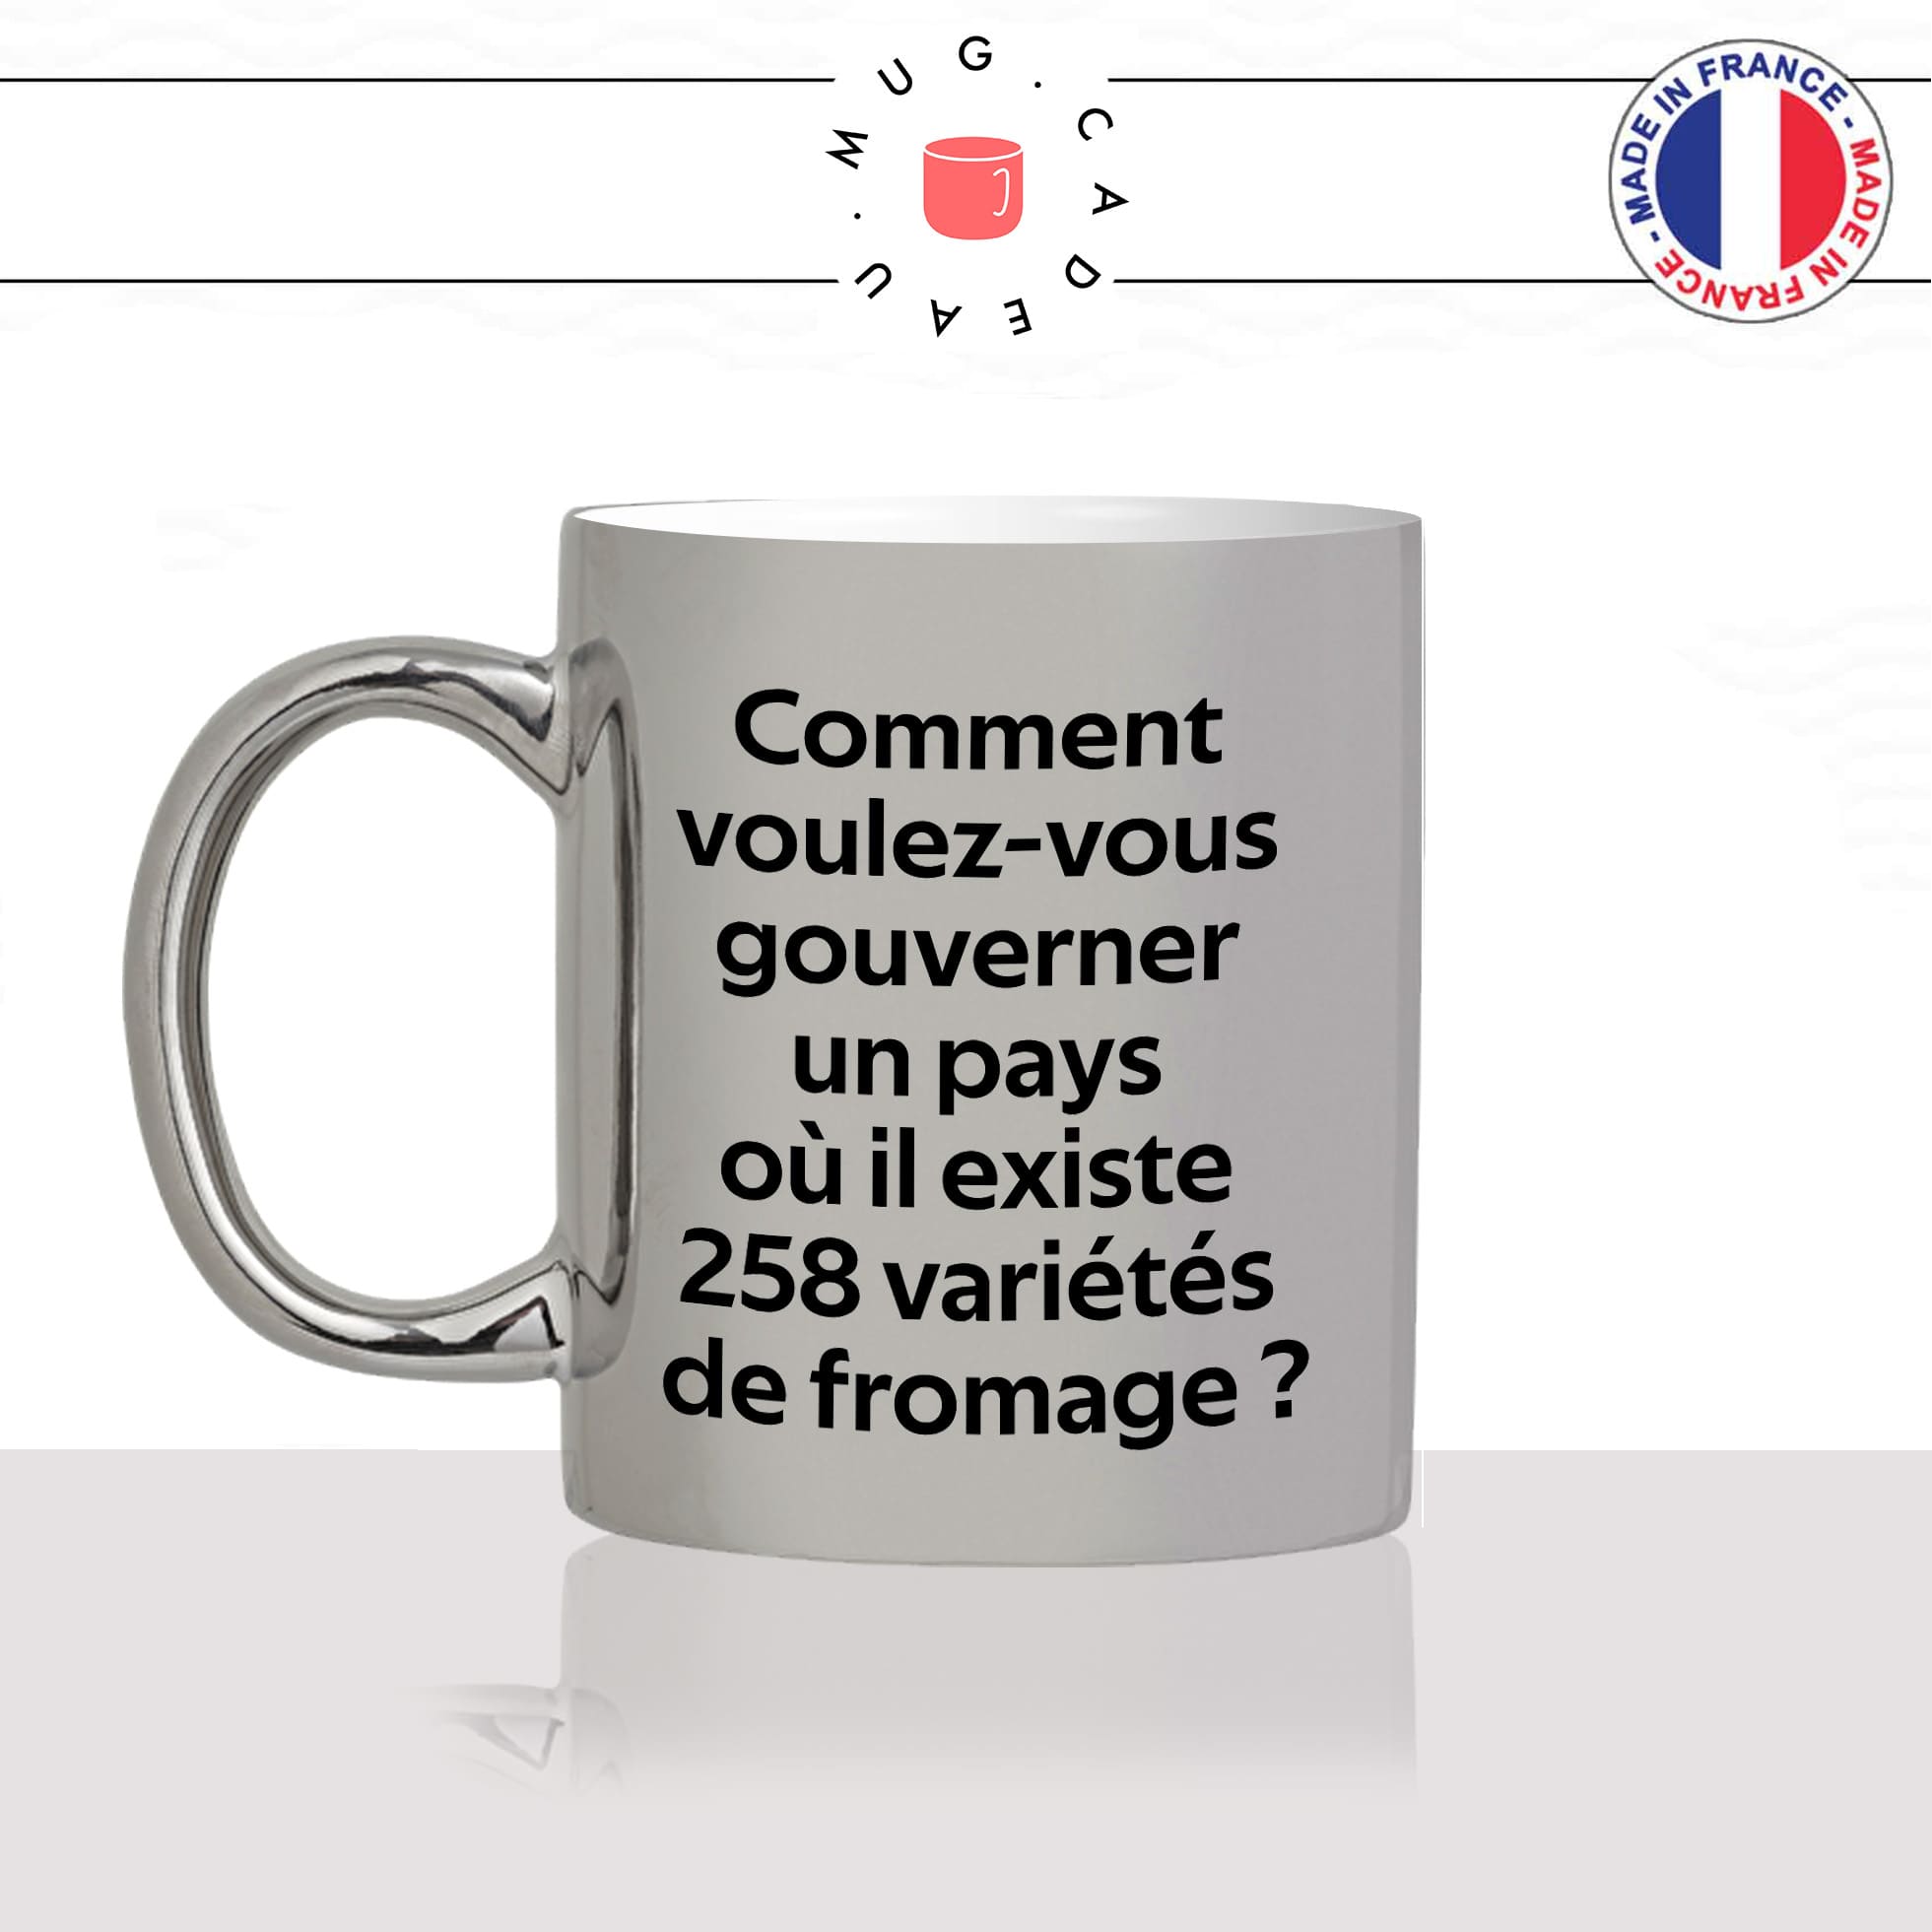 mug-tasse-argenté-argent-gris-silver-citation-charles-de-gaulle-gouverner-un-pays-variétés-de-fromage-humour-fun-idée-cadeau-originale-cool